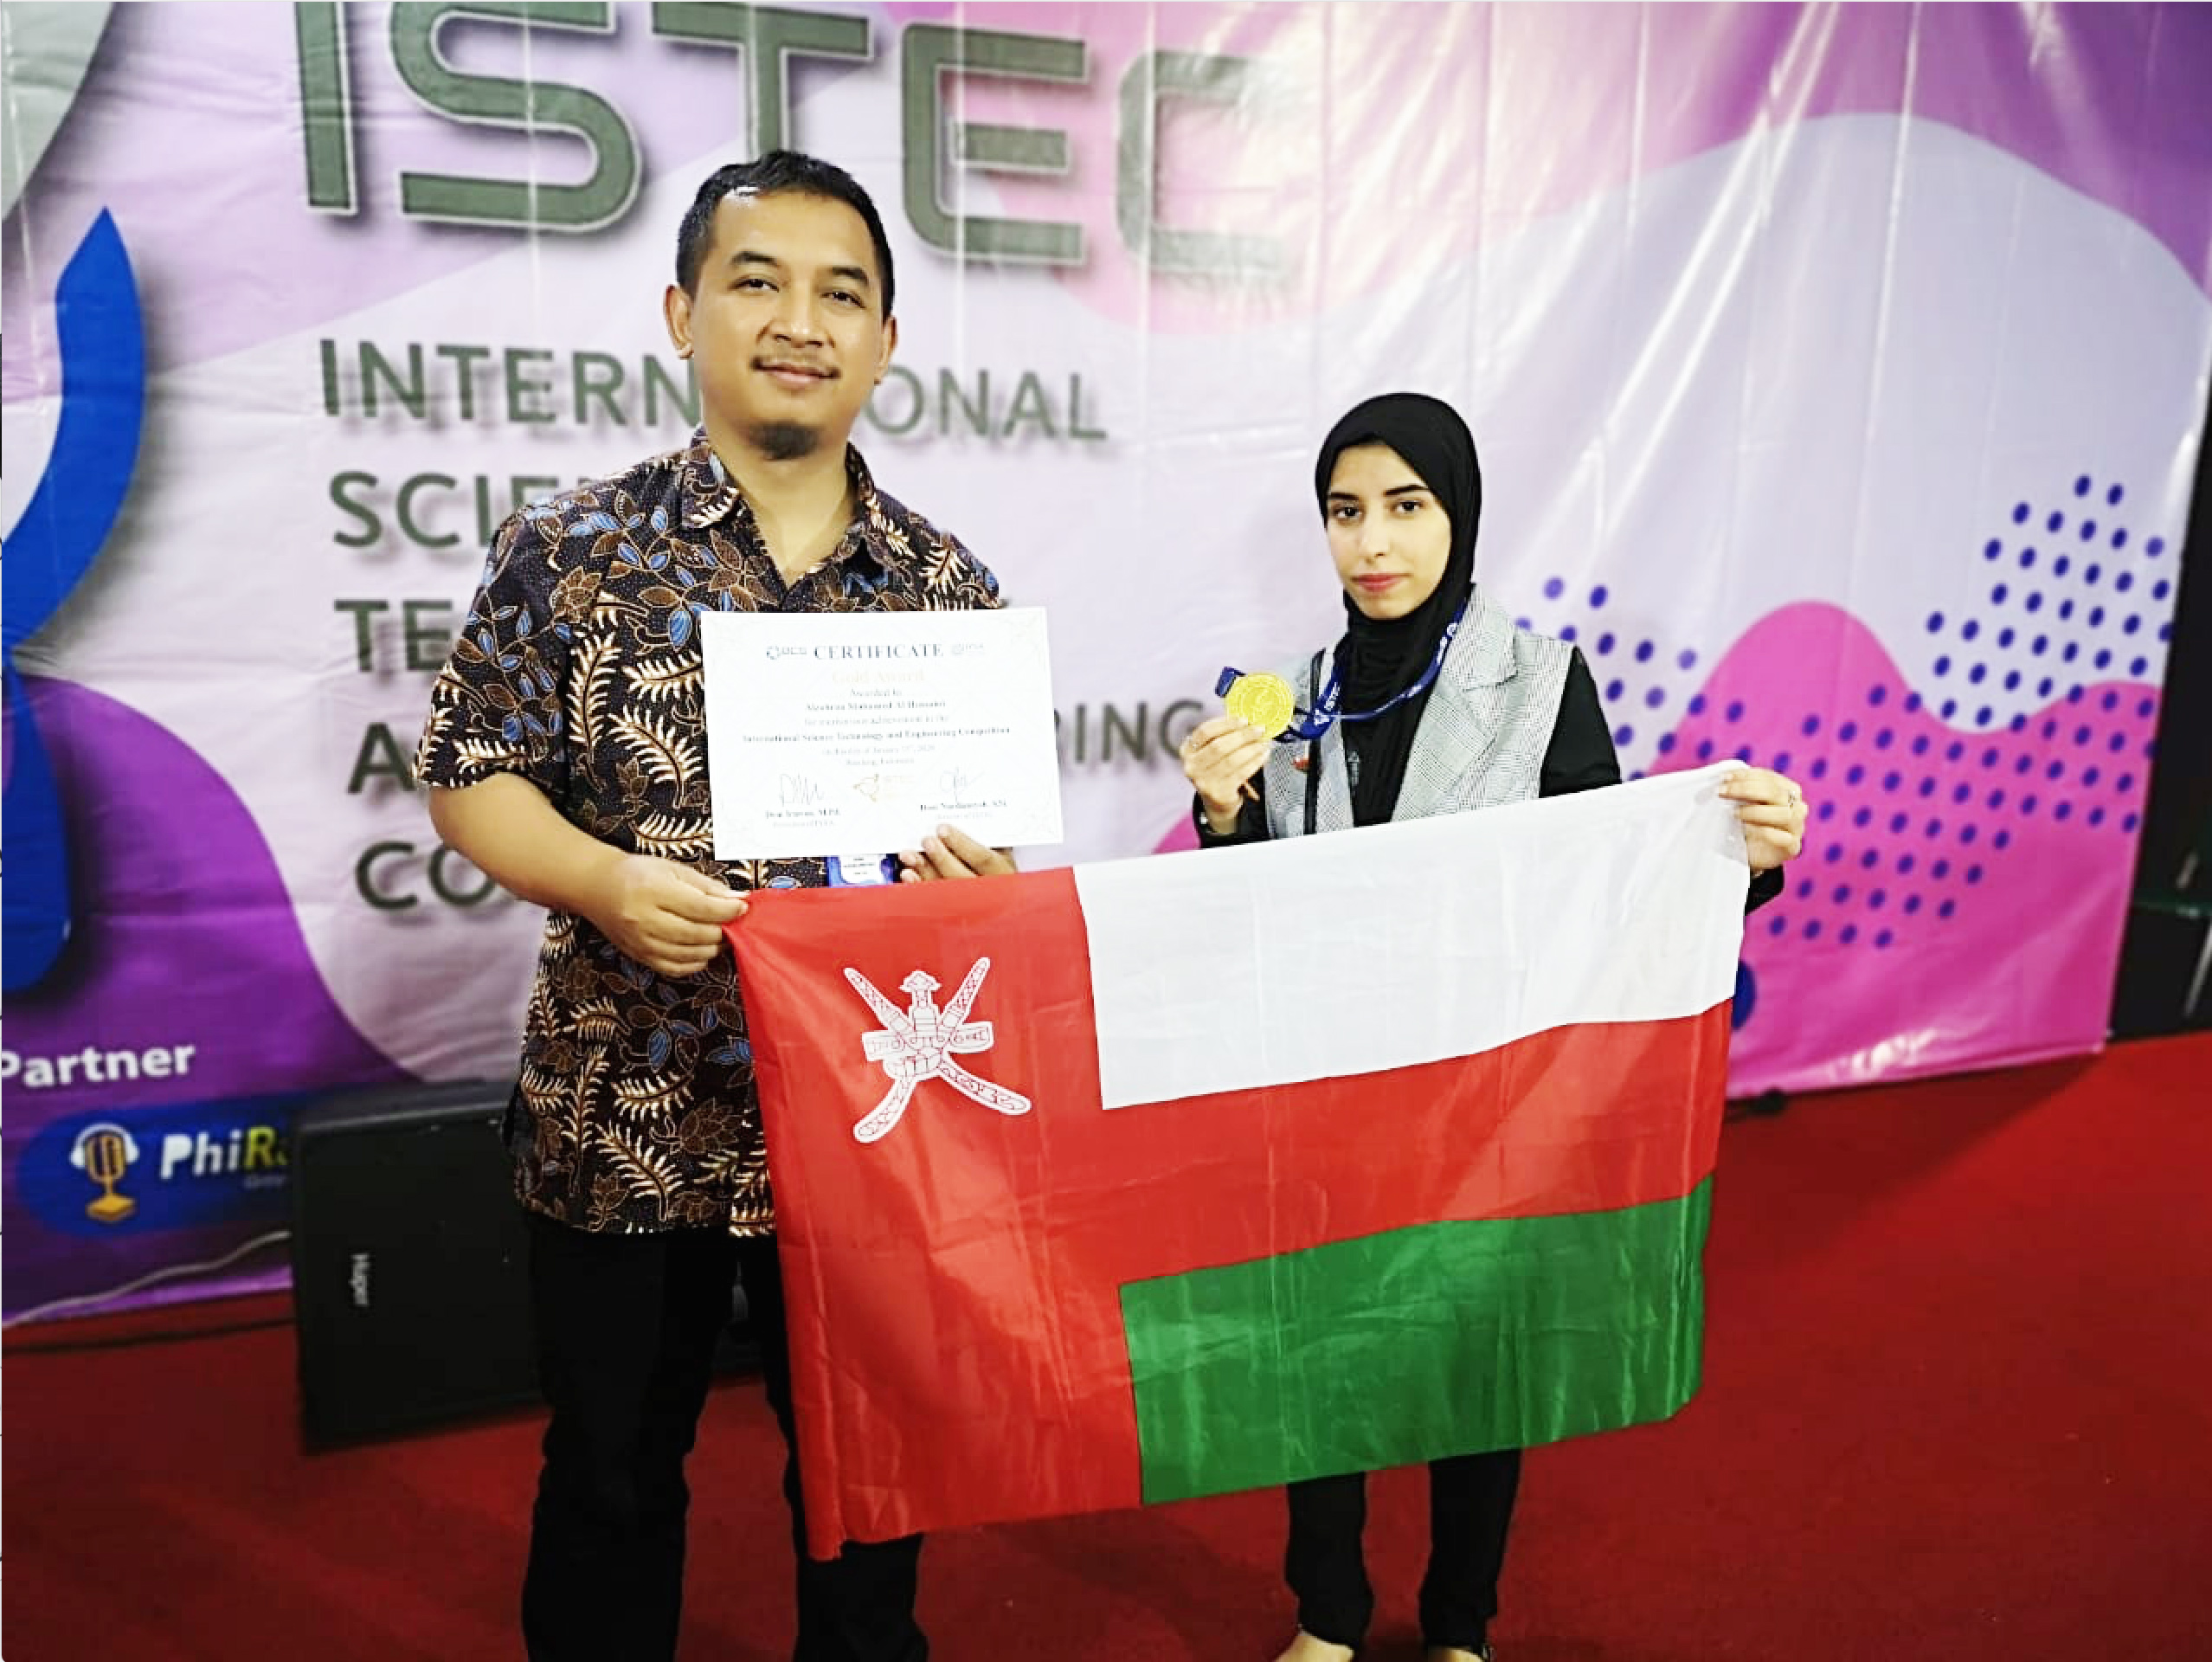 " الحسينية" تفوز بالميدالية الذهبية في مجال الهندسة بإندونيسيا